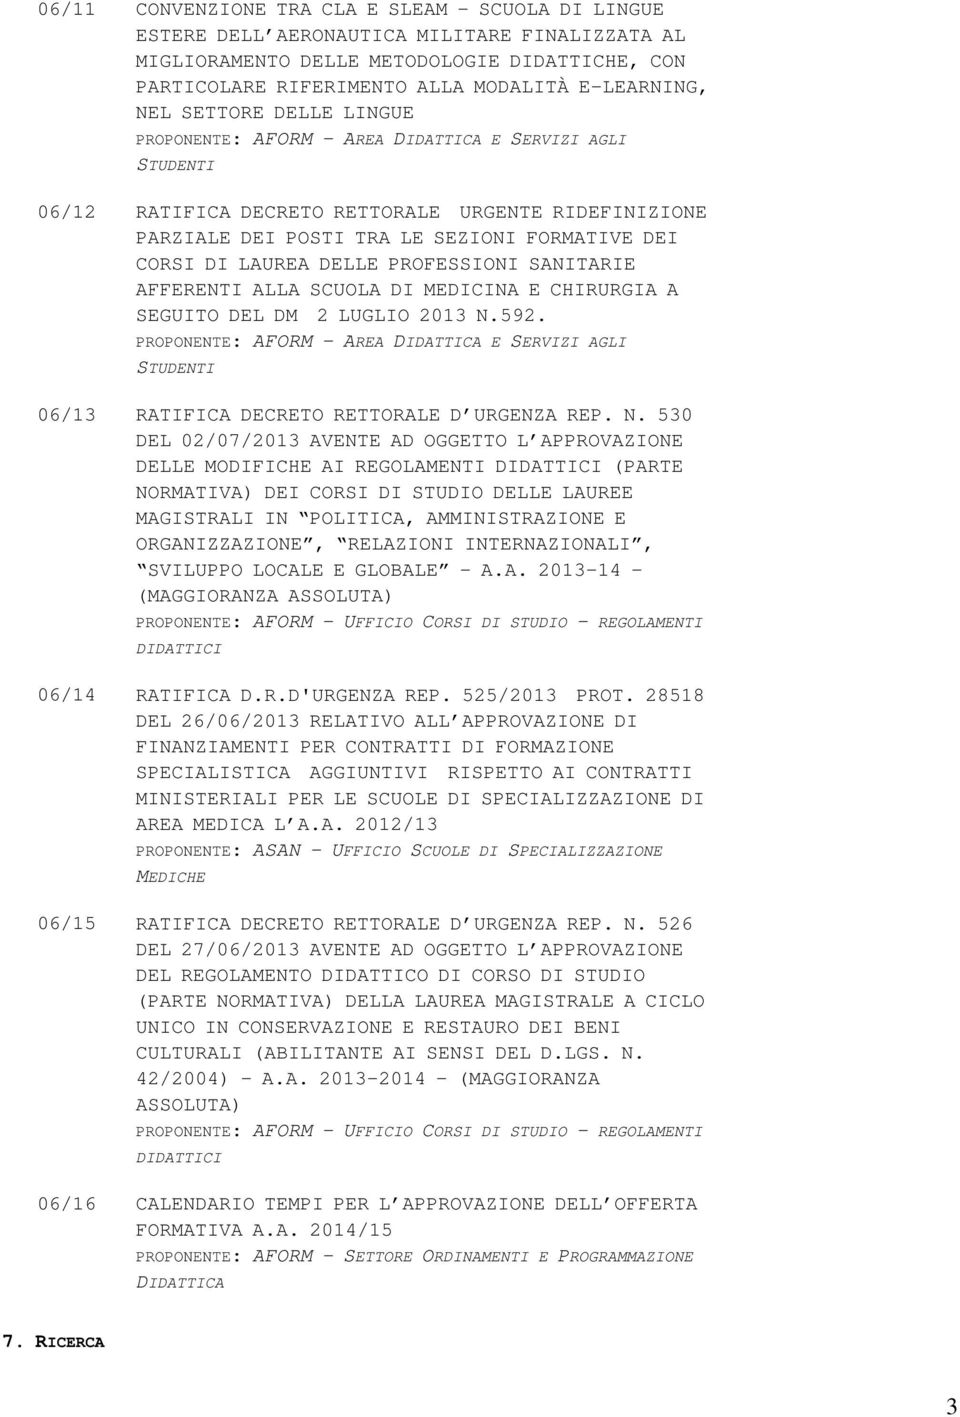 LAUREA DELLE PROFESSIONI SANITARIE AFFERENTI ALLA SCUOLA DI MEDICINA E CHIRURGIA A SEGUITO DEL DM 2 LUGLIO 2013 N.592.